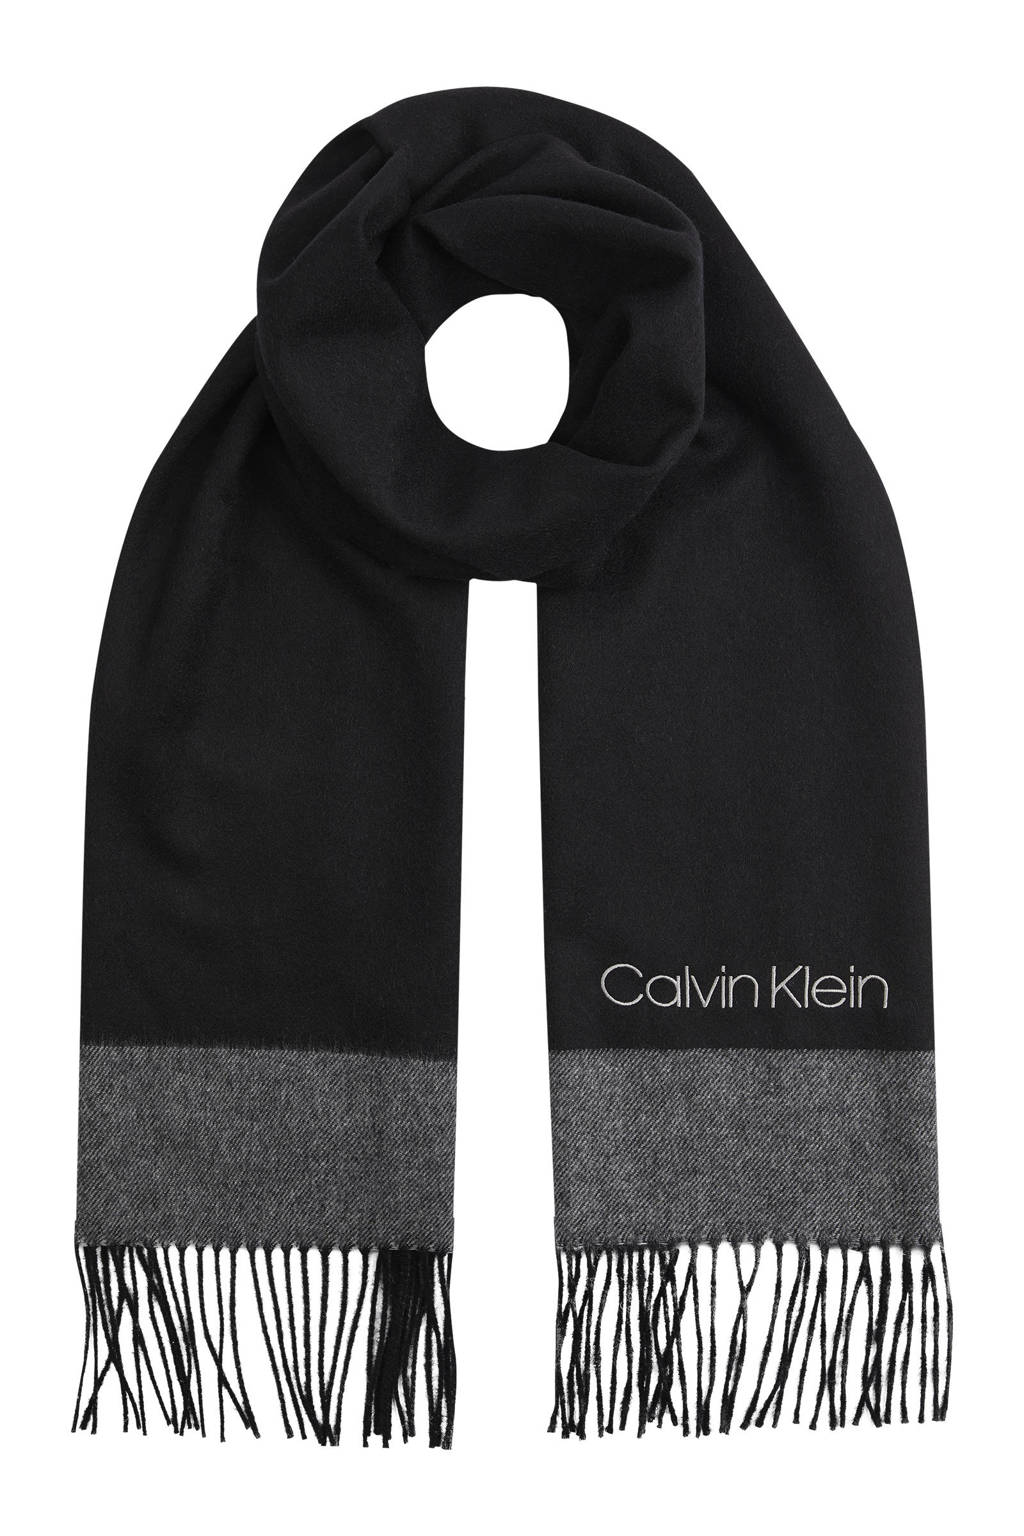 Vertrouwen op Klacht maagd Calvin Klein sjaal zwart/grijs | wehkamp